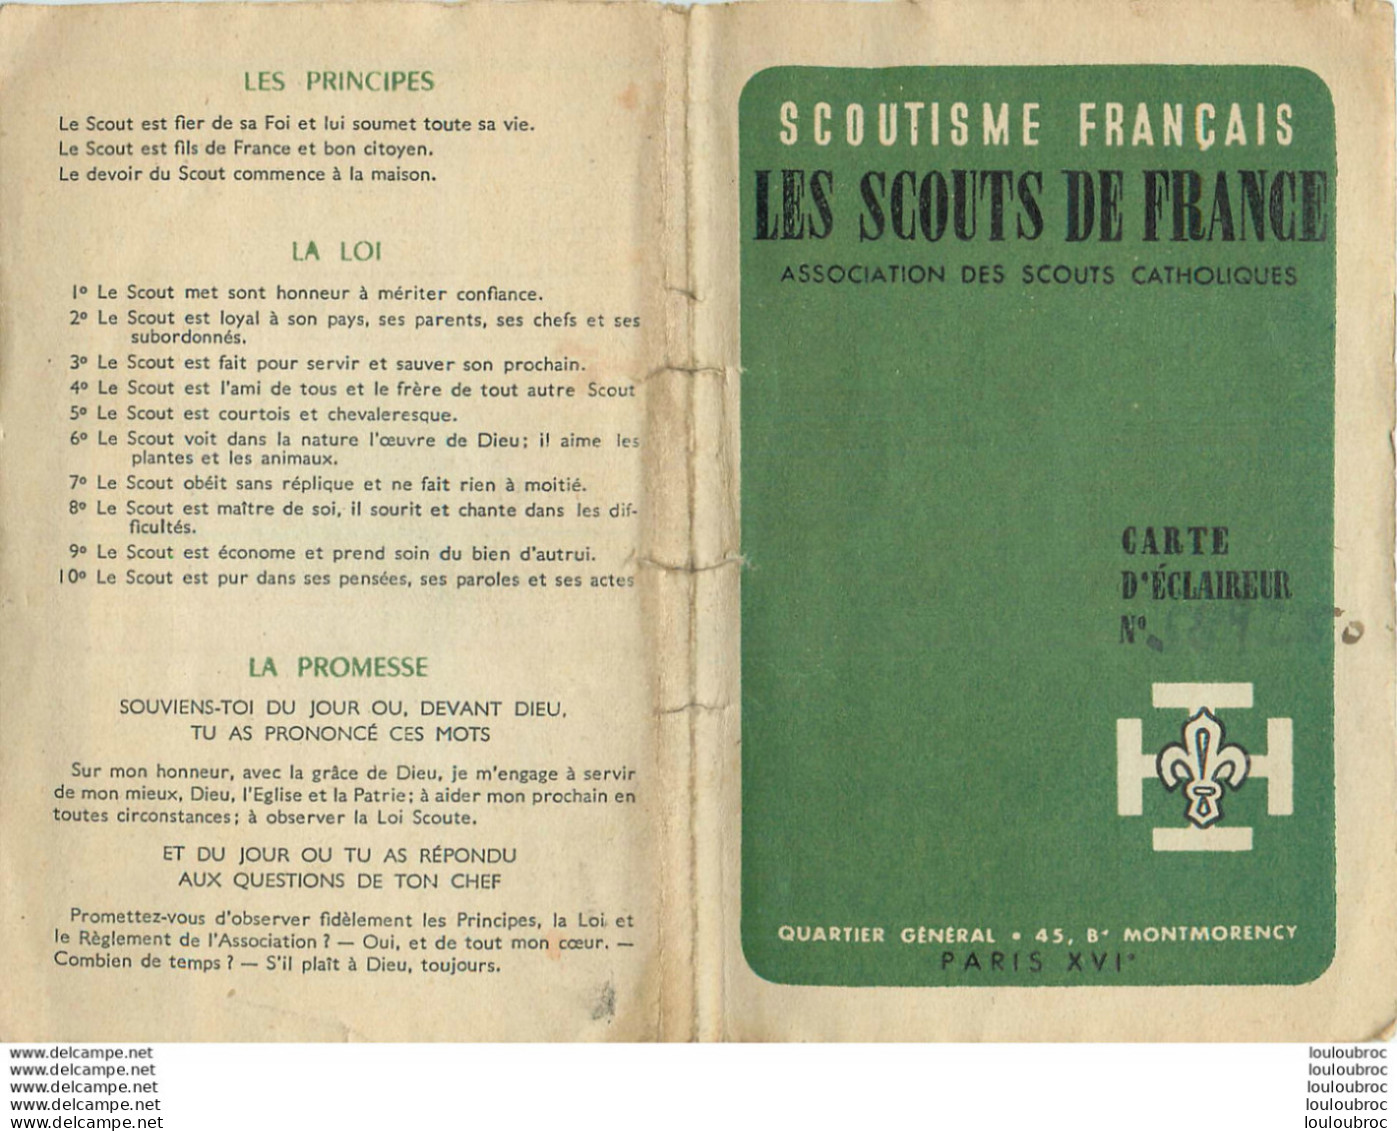 LES SCOUTS DE FRANCE CARTE D'ECLAIREUR 1950 DISTRICT MONT VALERIEN - Pfadfinder-Bewegung